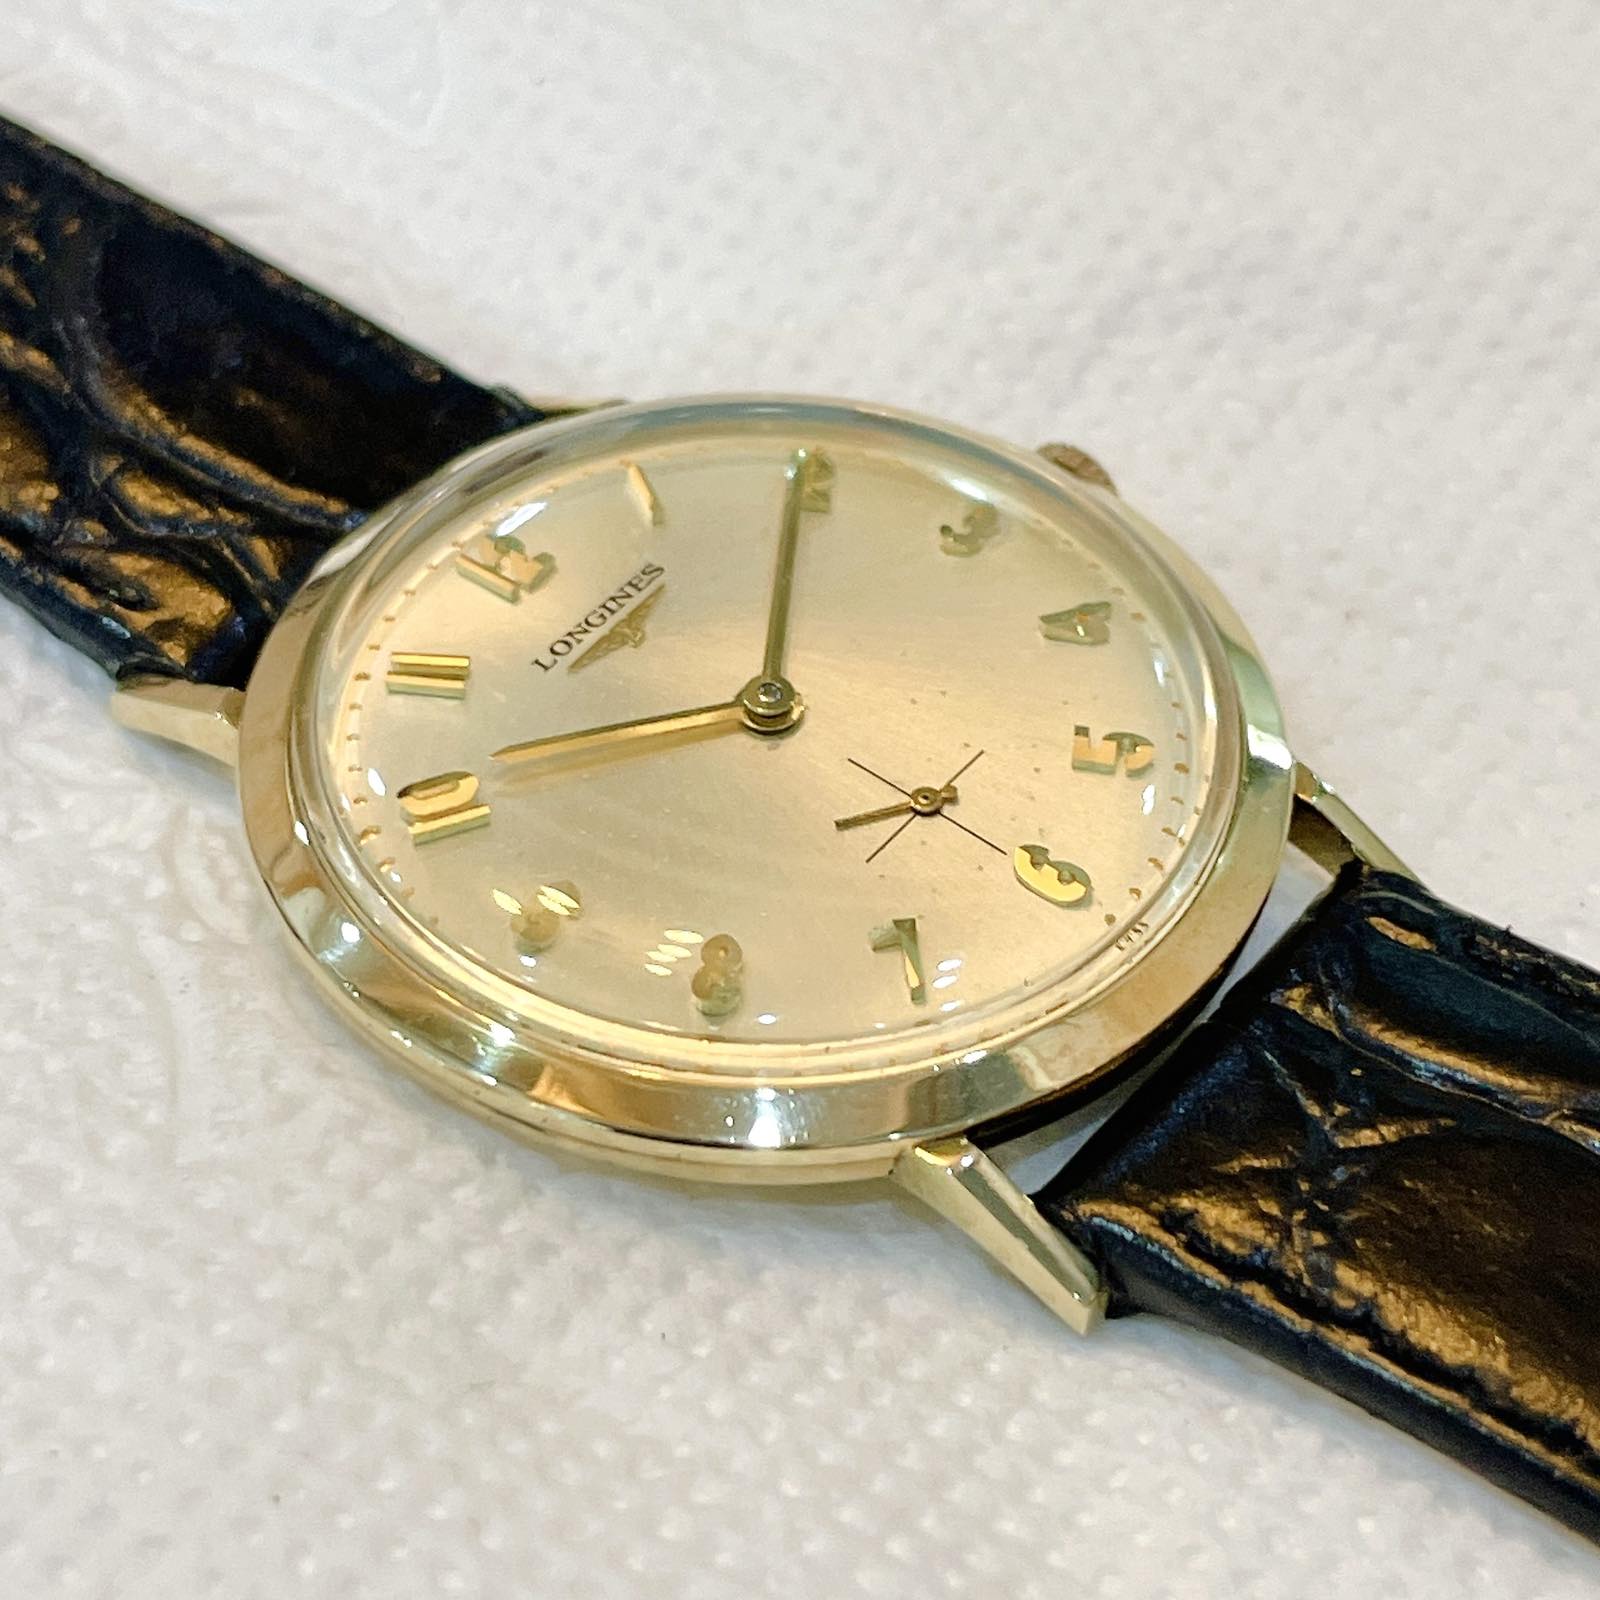 Đồng hồ cổ Longines lên dây siêu mỏng bọc vàng 10k Gold Filled chính hãng thụy Sĩ